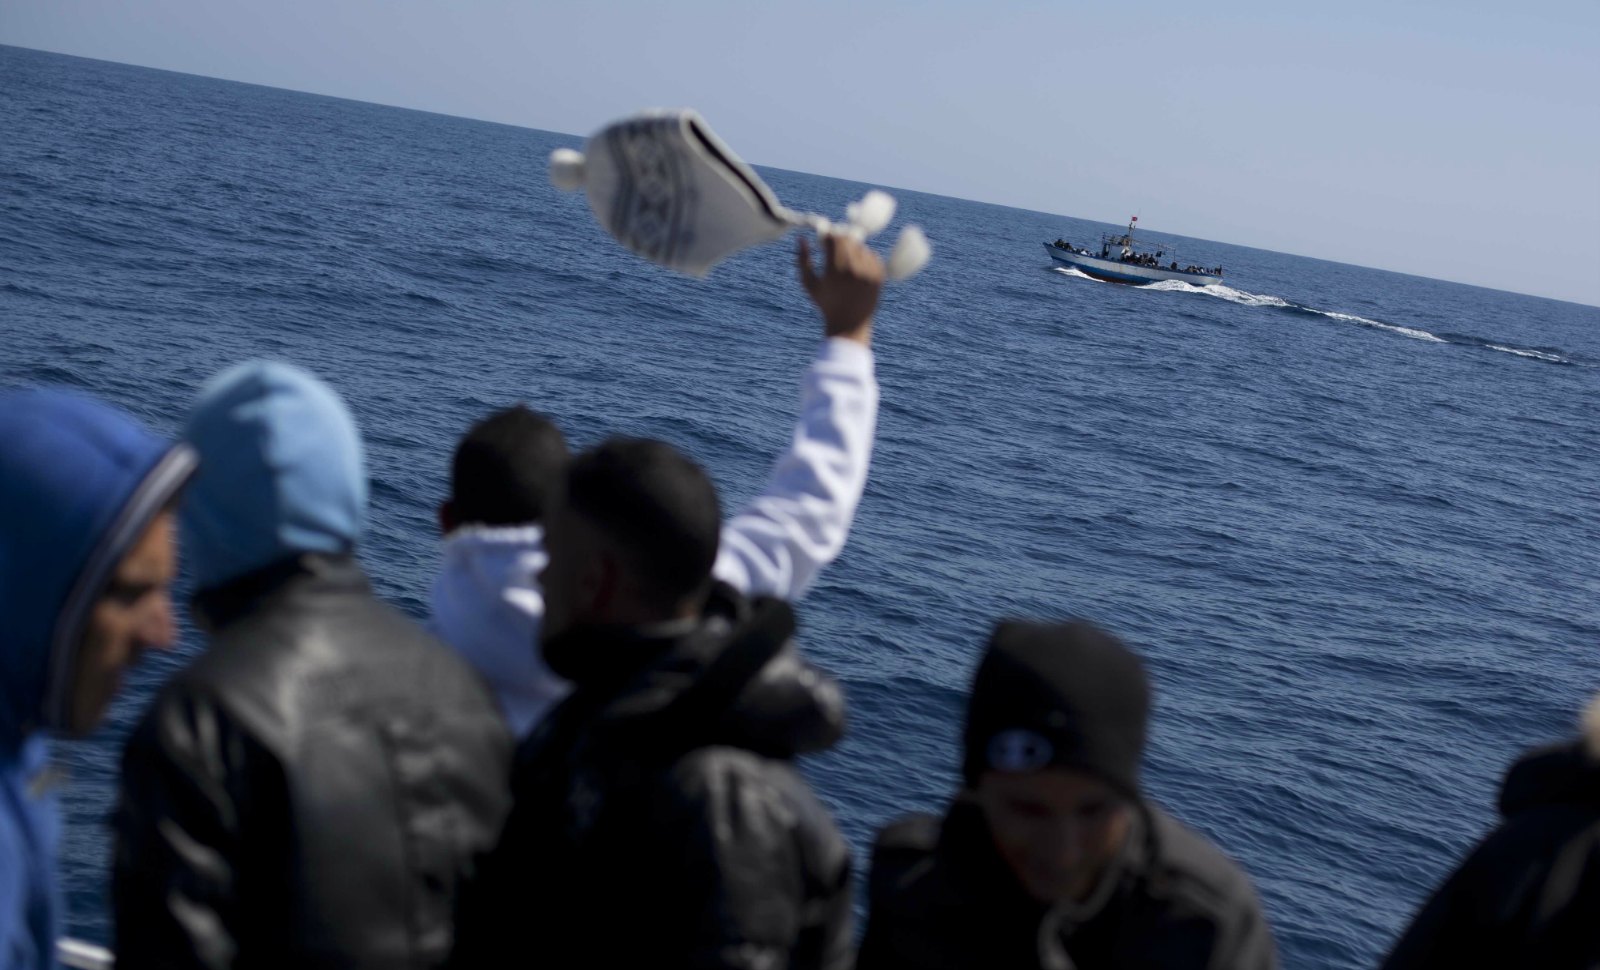 Identitaires vs pêcheurs tunisiens: bataille navale en Méditerranée